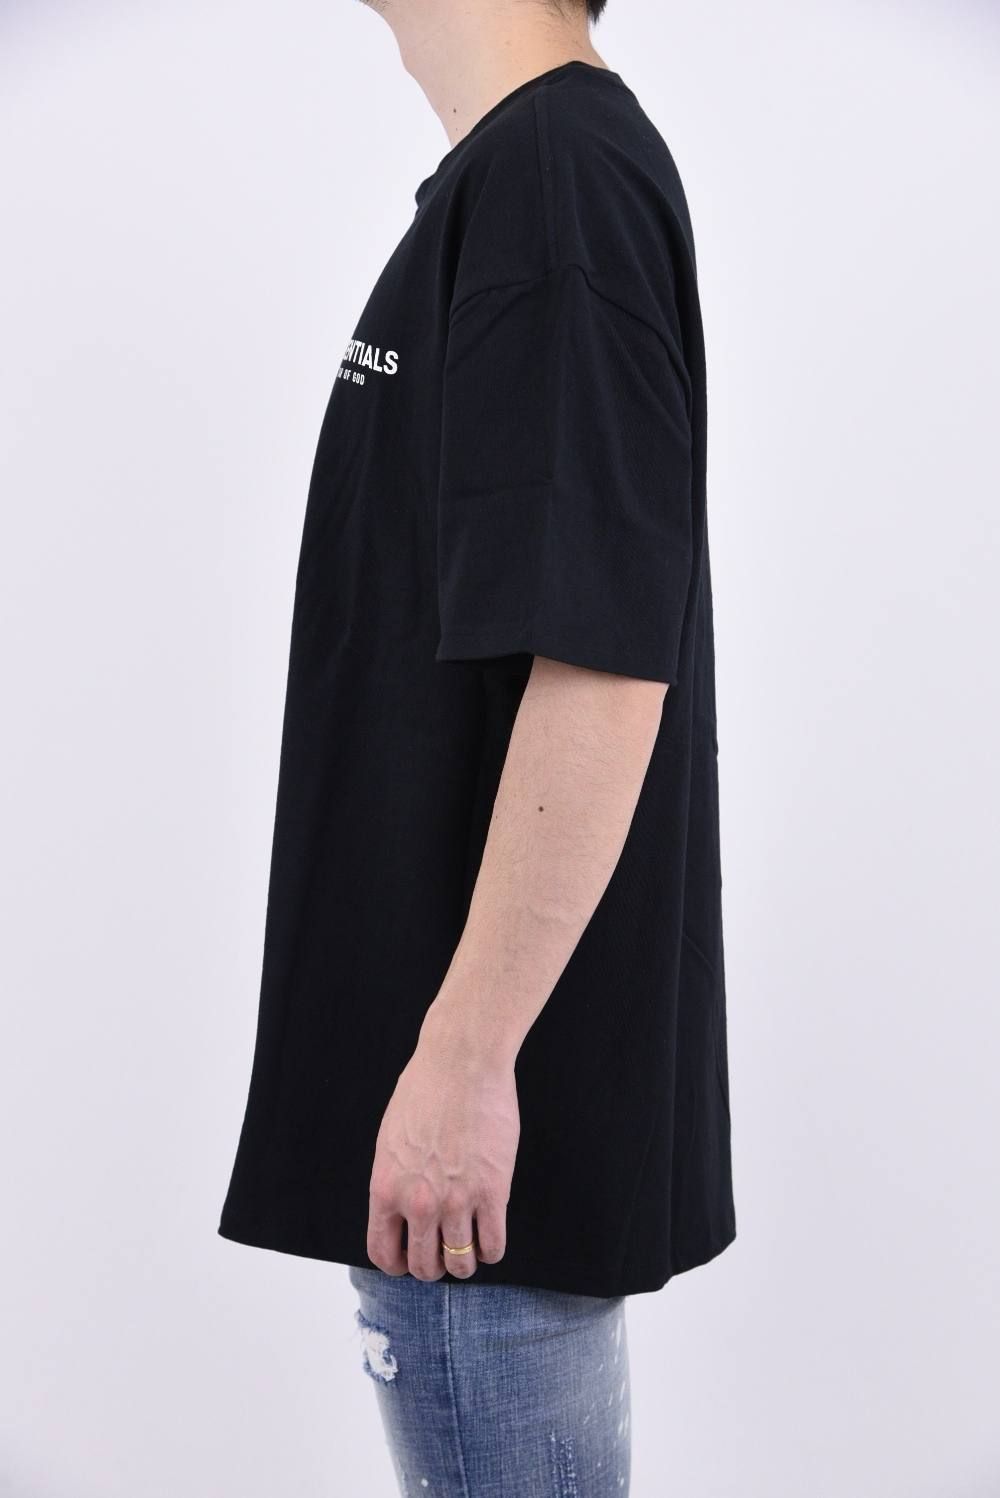 FOG ESSENTIALS S/S TEE / ワンポイントロゴ クルーネック 半袖 プリントTシャツ ブラック - XS